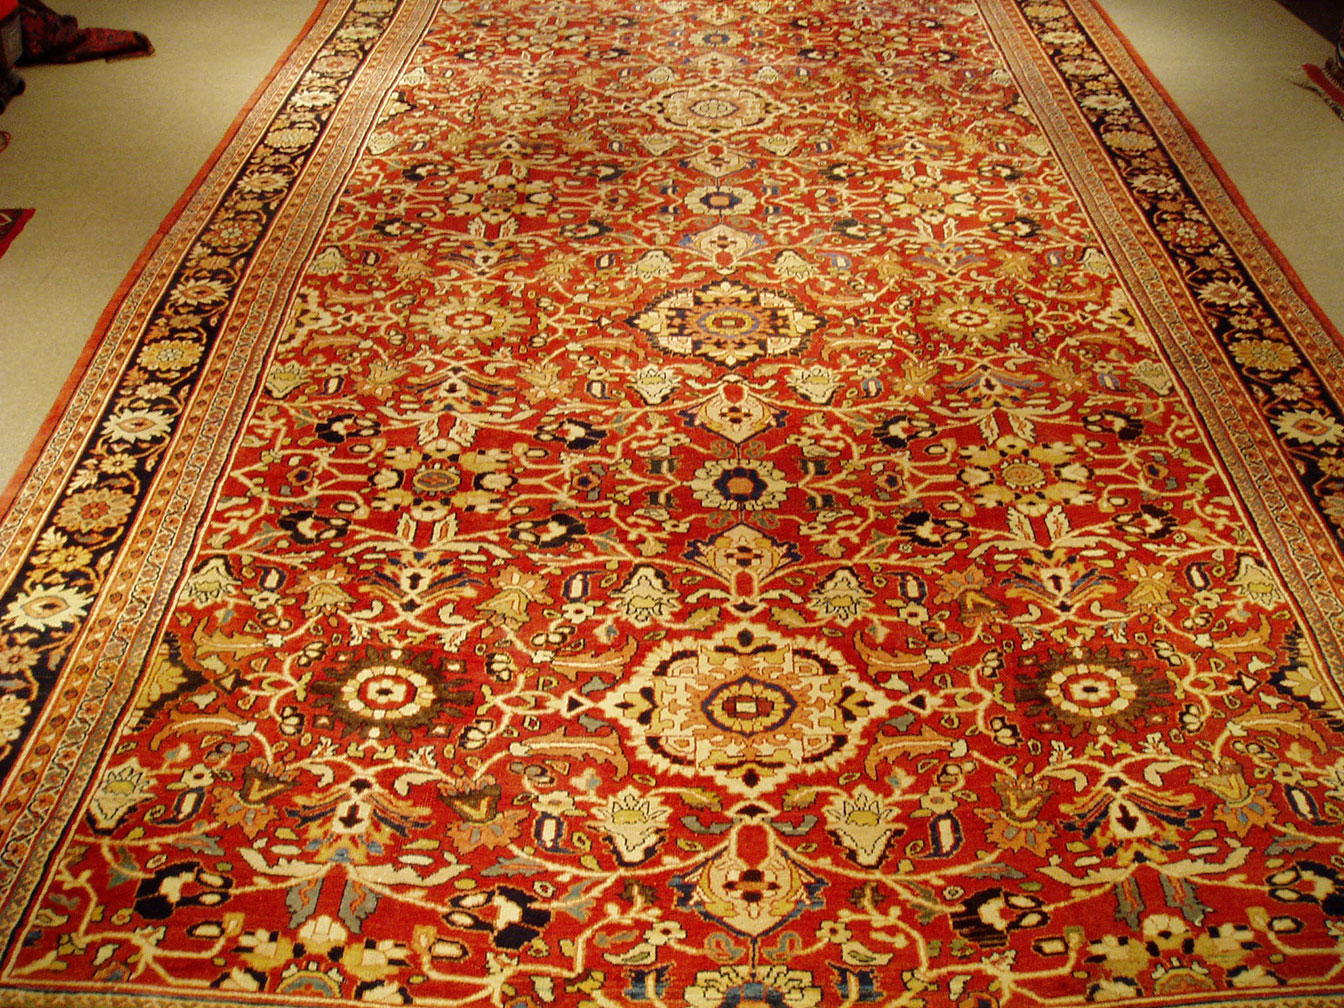 Antique sultan abad Carpet - # 52636